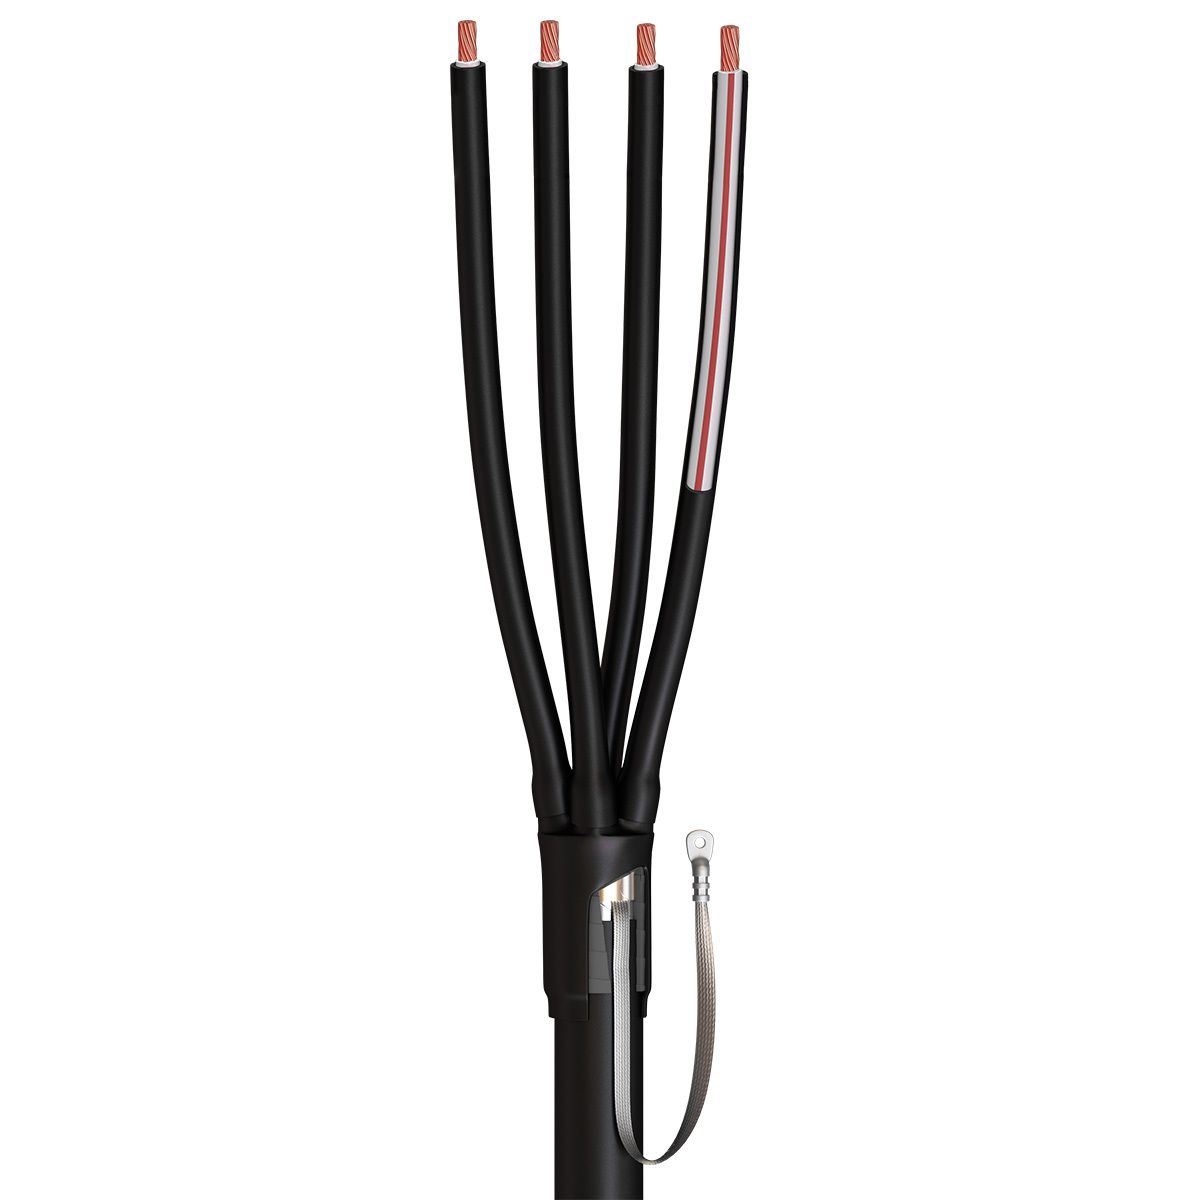 4ПКТп(б)-1-16/25 Light: Муфта кабельная концевая 4ПКТп(б)-1-16/25 Light